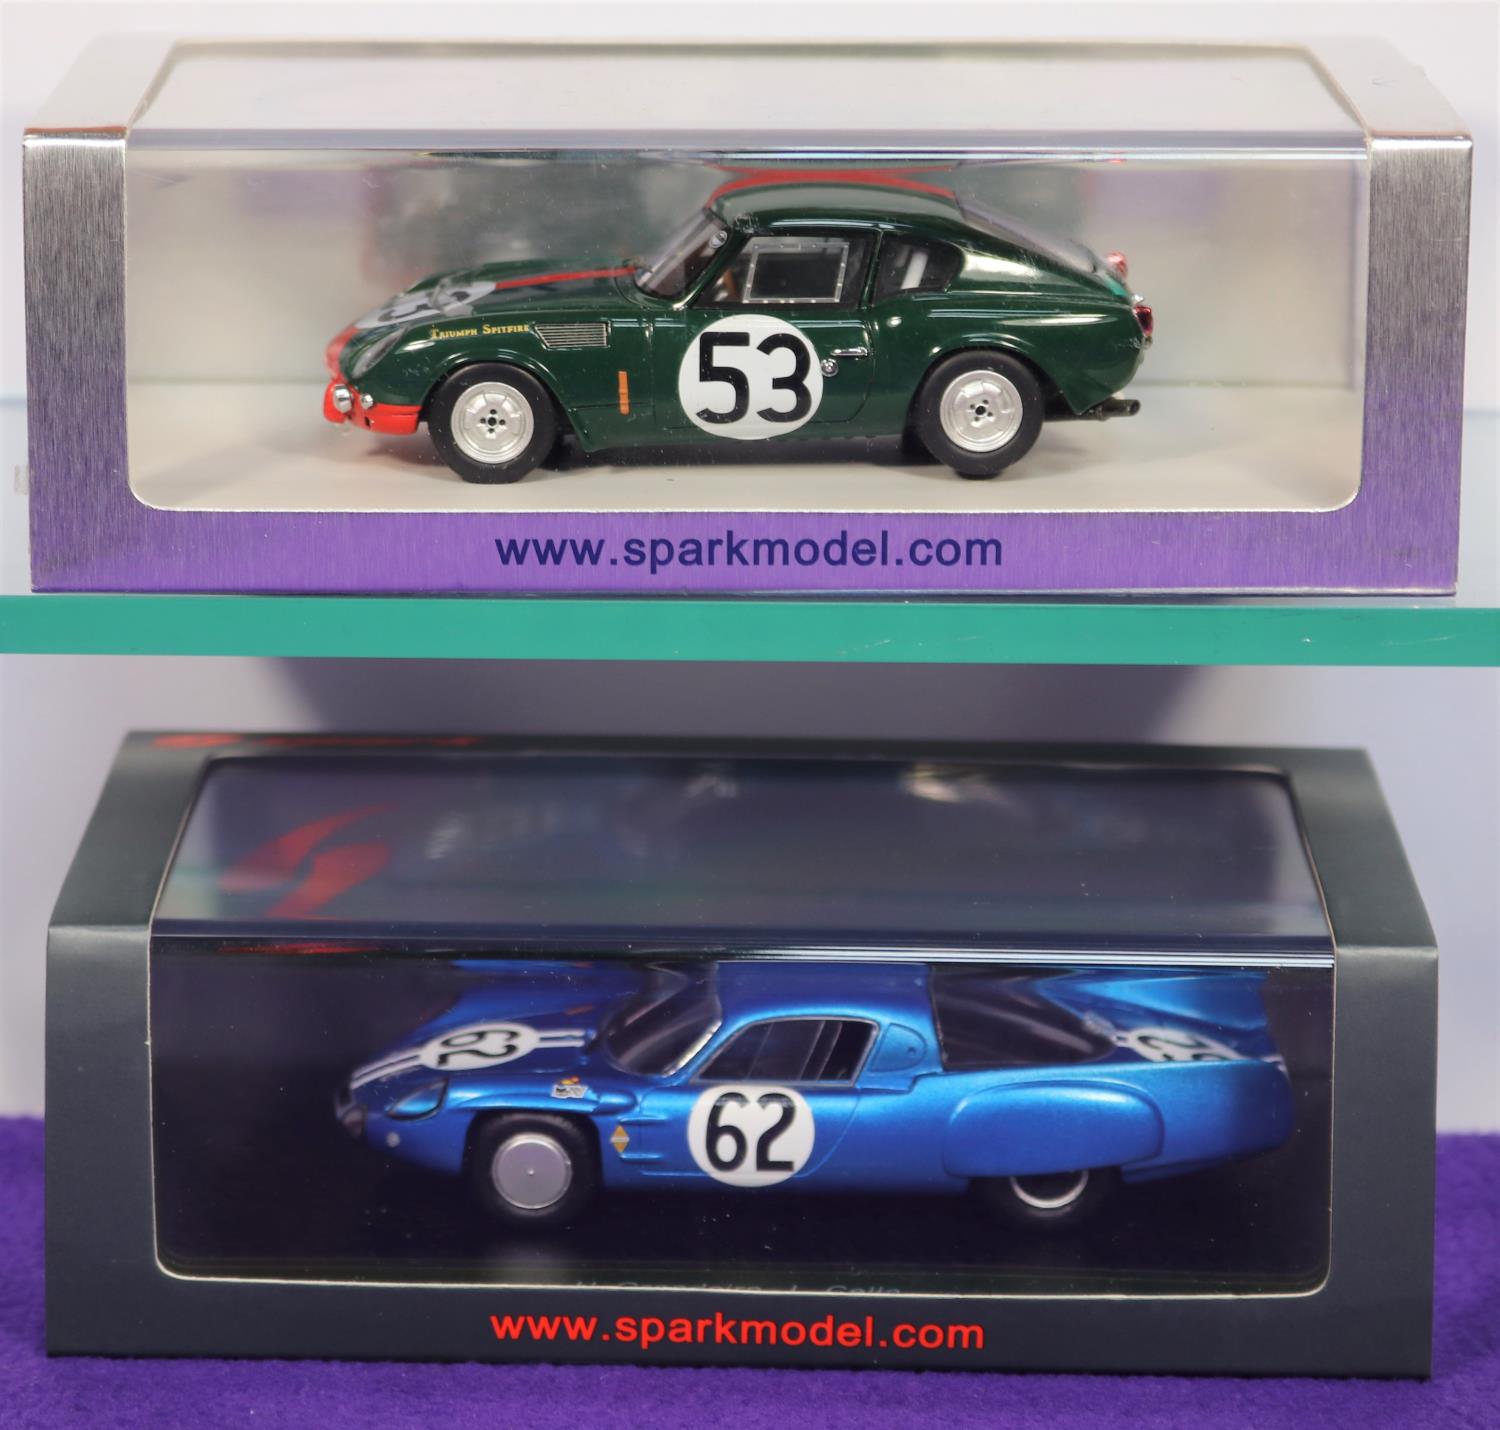 2 Spark 1:43 Racing Cars. Triumph Spitfire No. 53 Le Mans 1965, drivers B.Bradley and P.Bolton. Plus